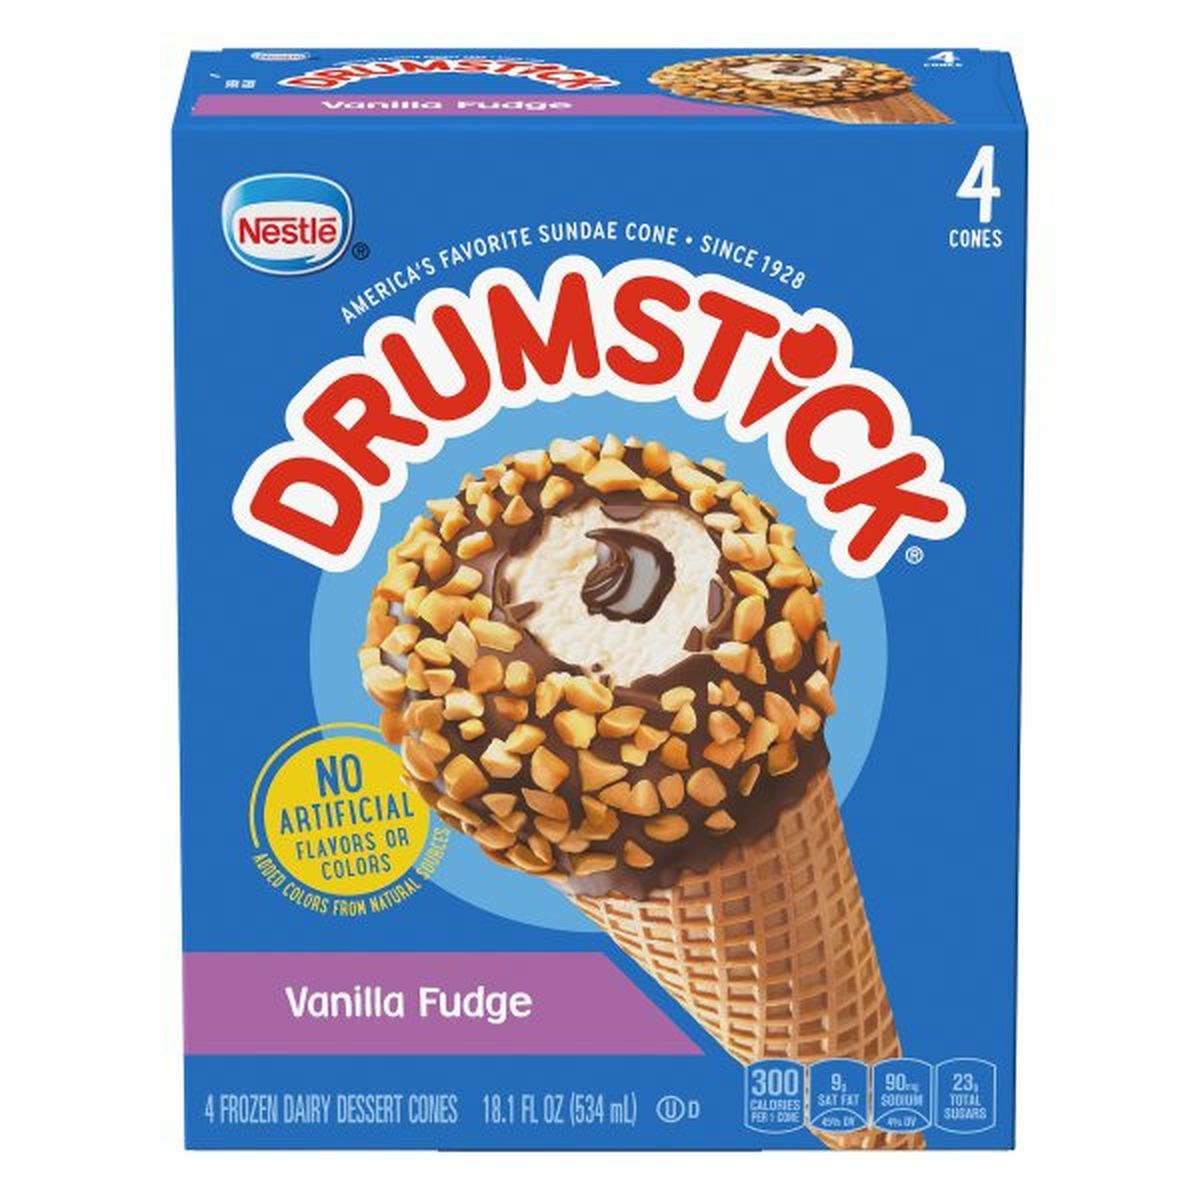 Calories in Drumstick Frozen Dairy Dessert Cones, Vanilla Fudge, 4 Pack